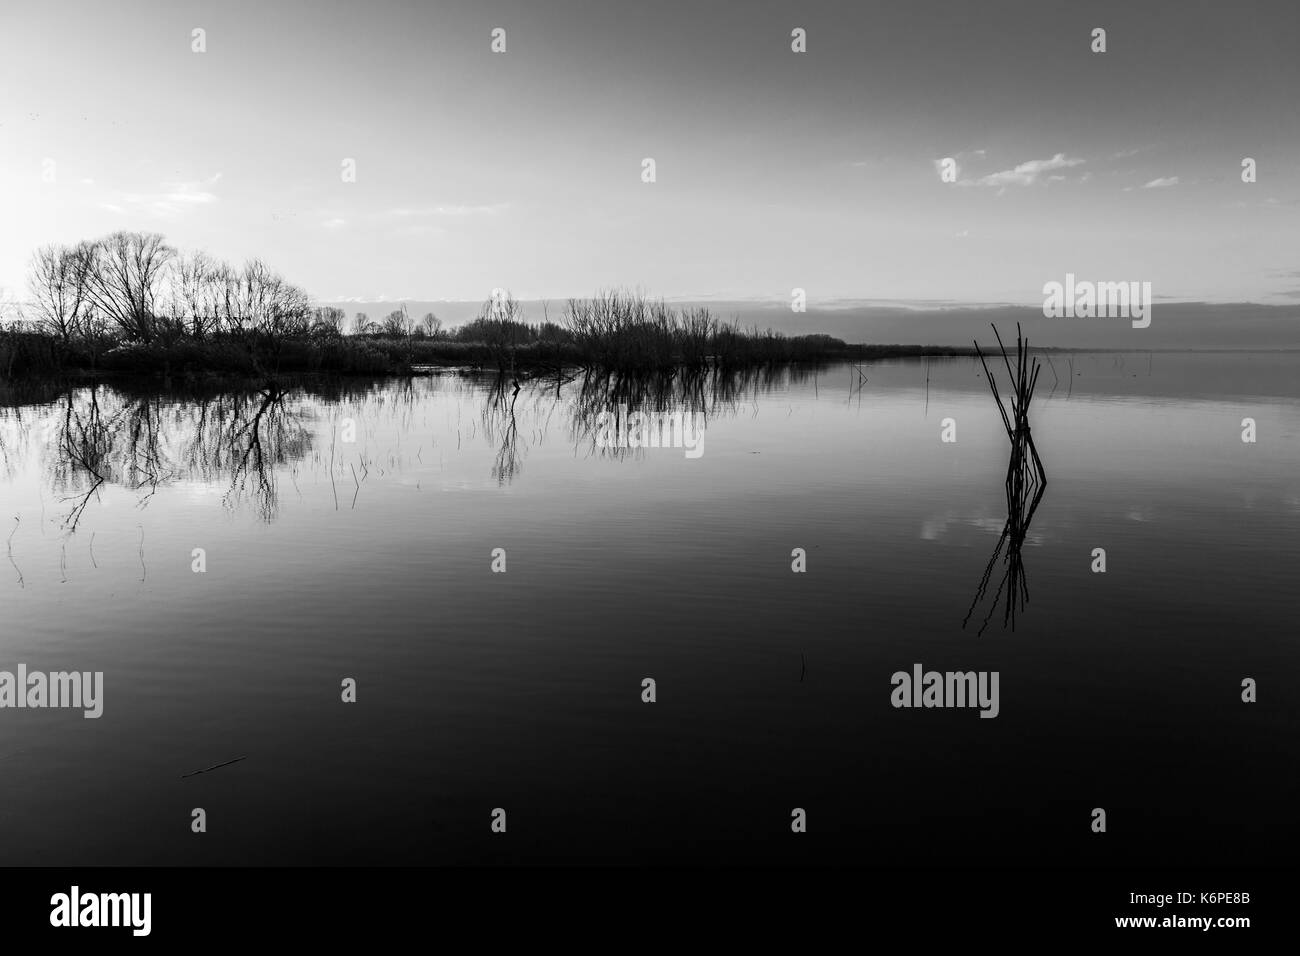 Il lago al crepuscolo con perfetta riflessioni, pali di legno in primo piano, alberi in background e toni morbidi Foto Stock